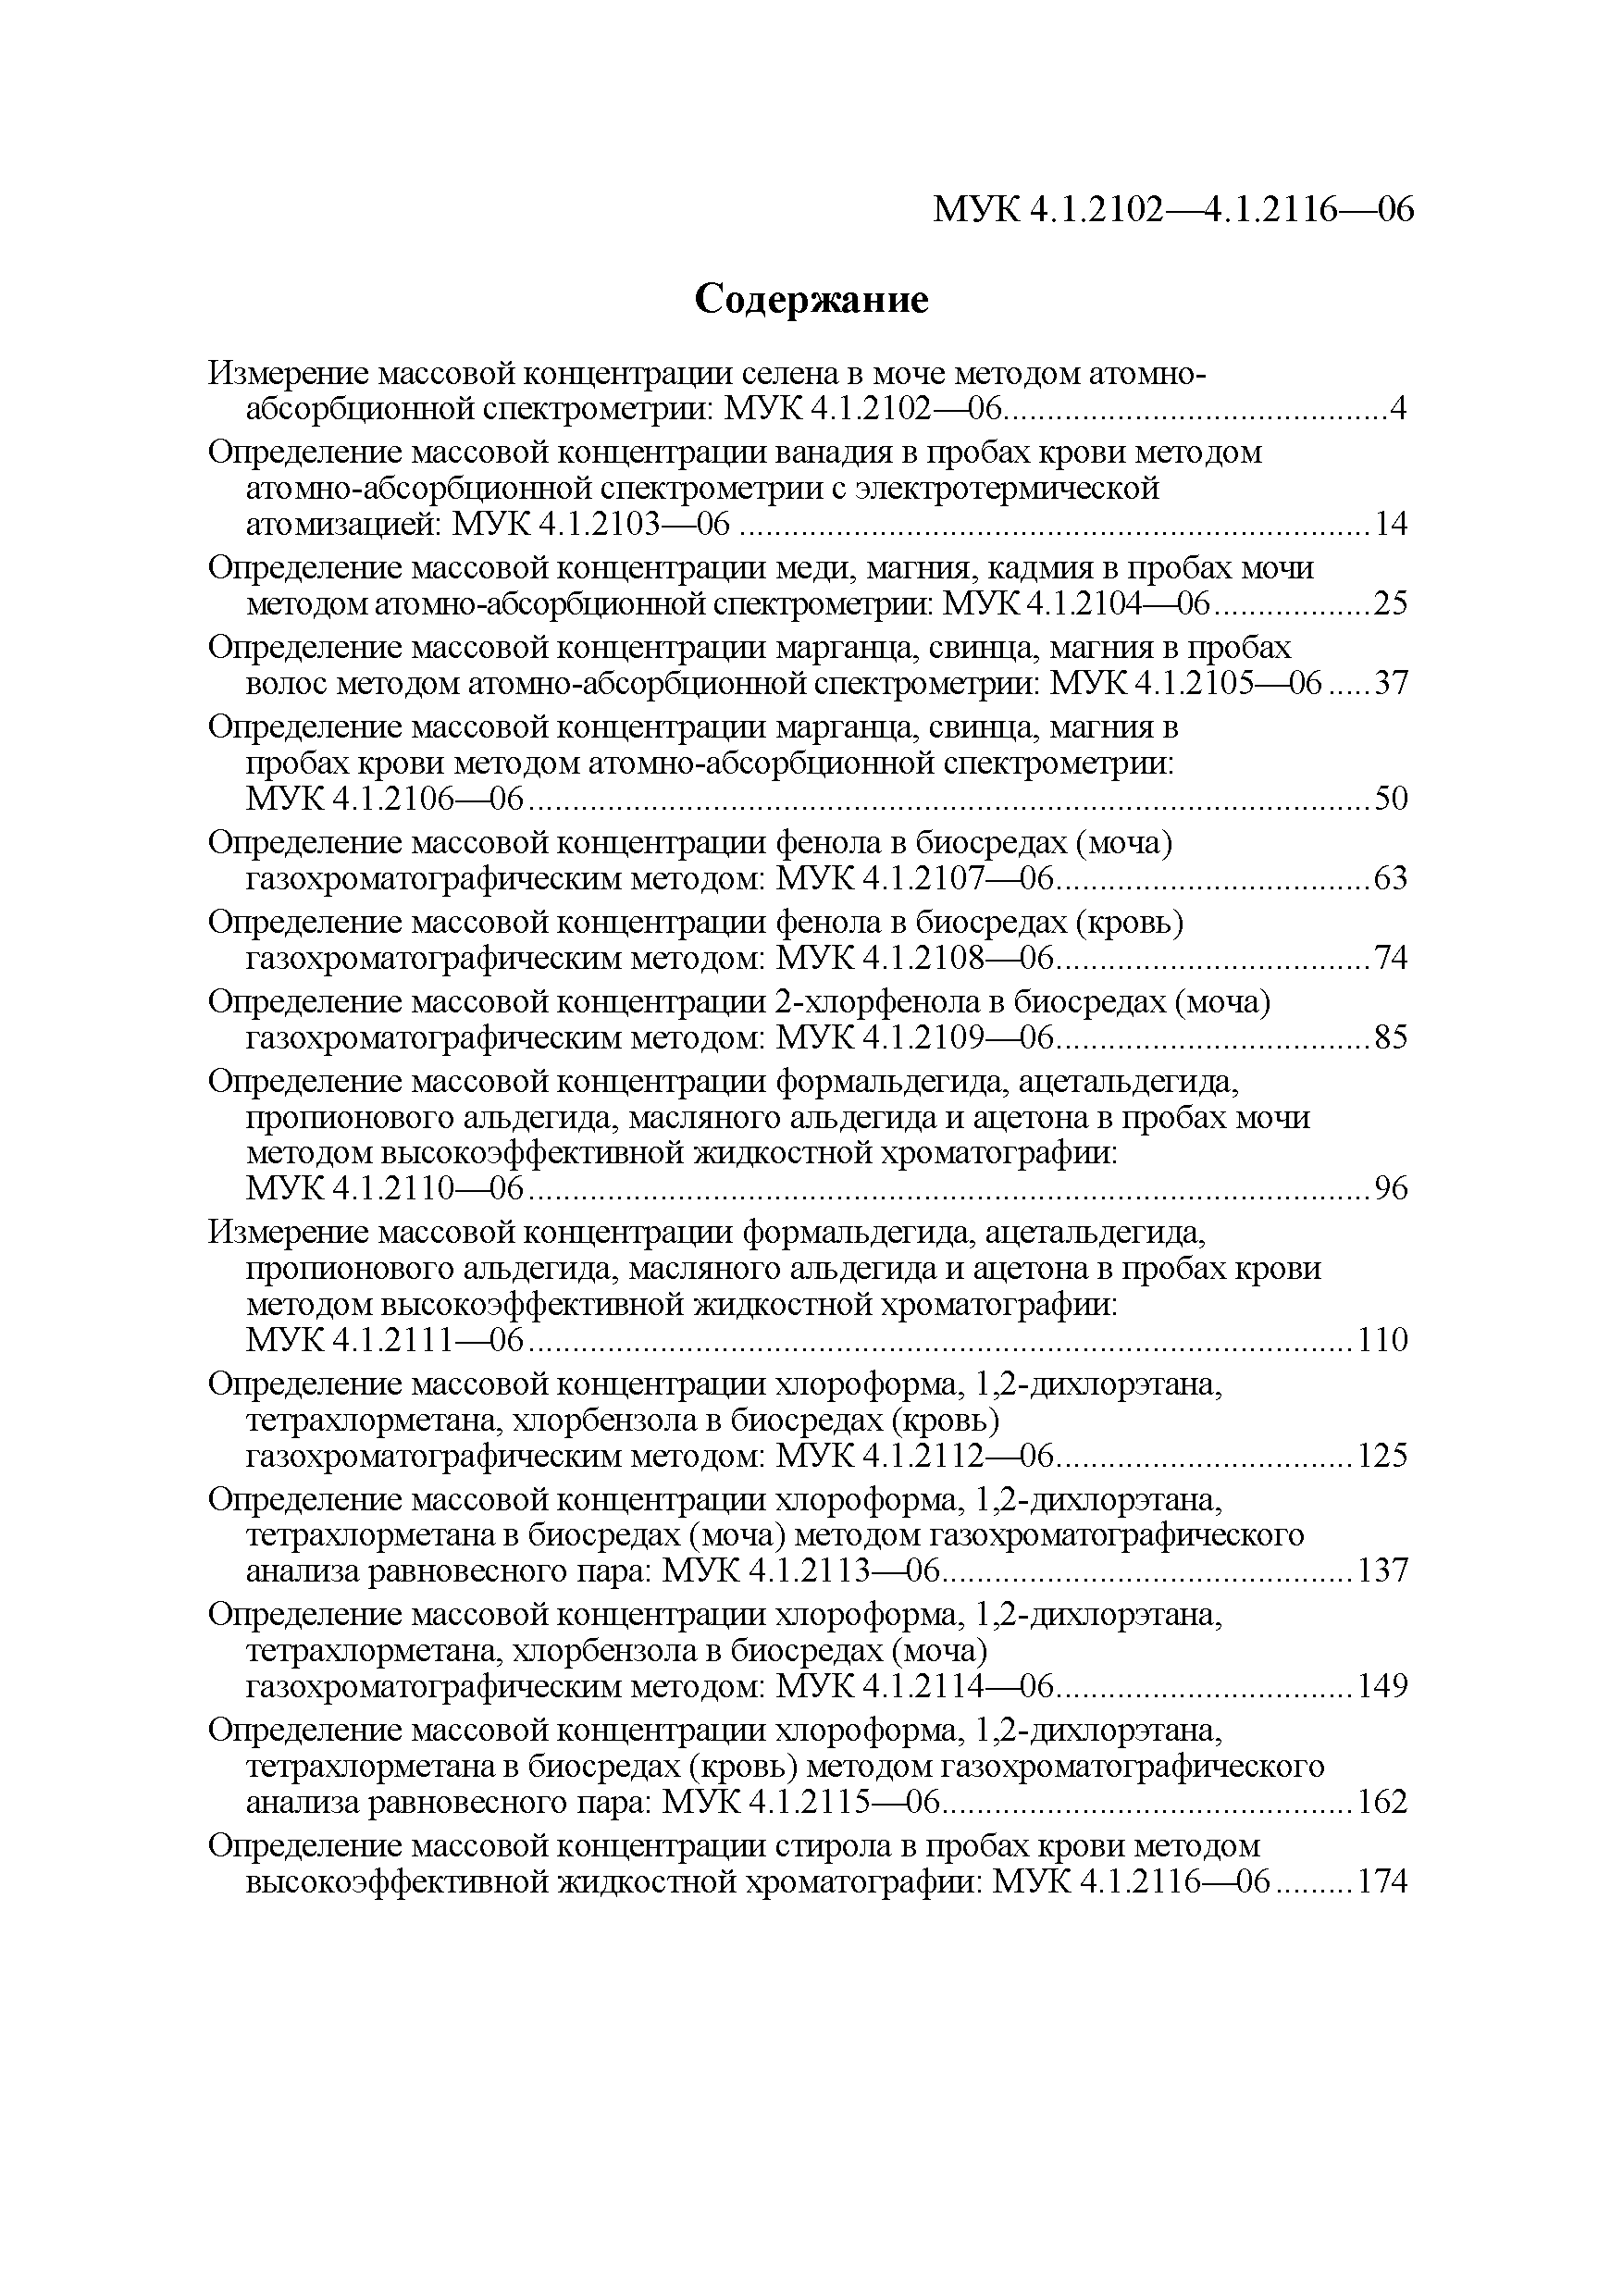 МУК 4.1.2108-06